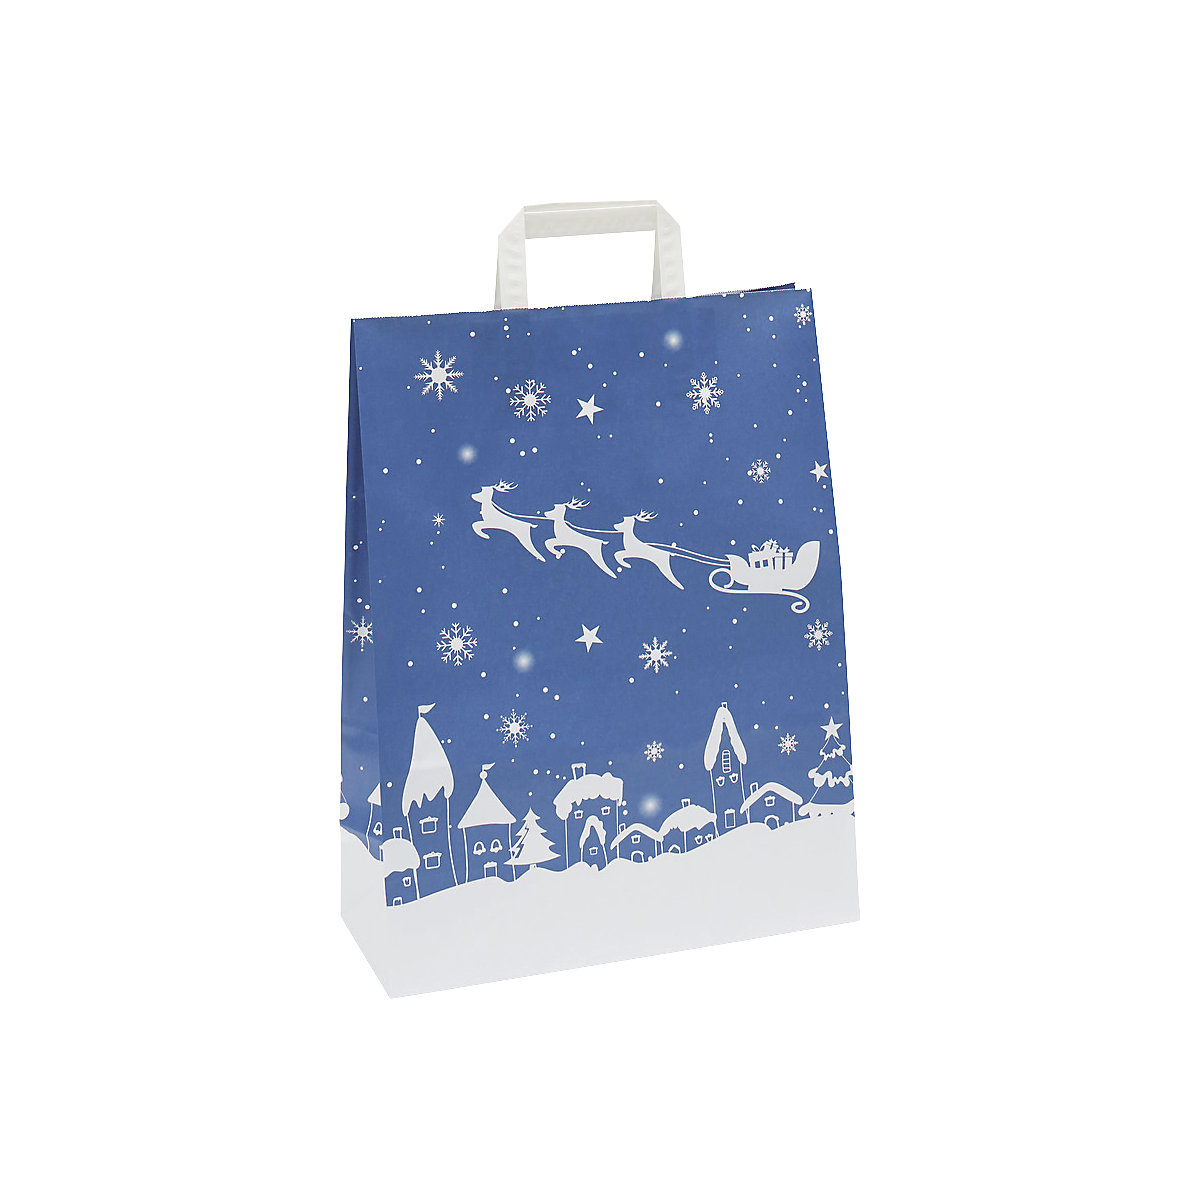 Papiertragetasche Weihnachten, blau/weiß gemustert, VE 25 Stk, LxBxH 320 x 140 x 420 mm, ab 2 VE-1